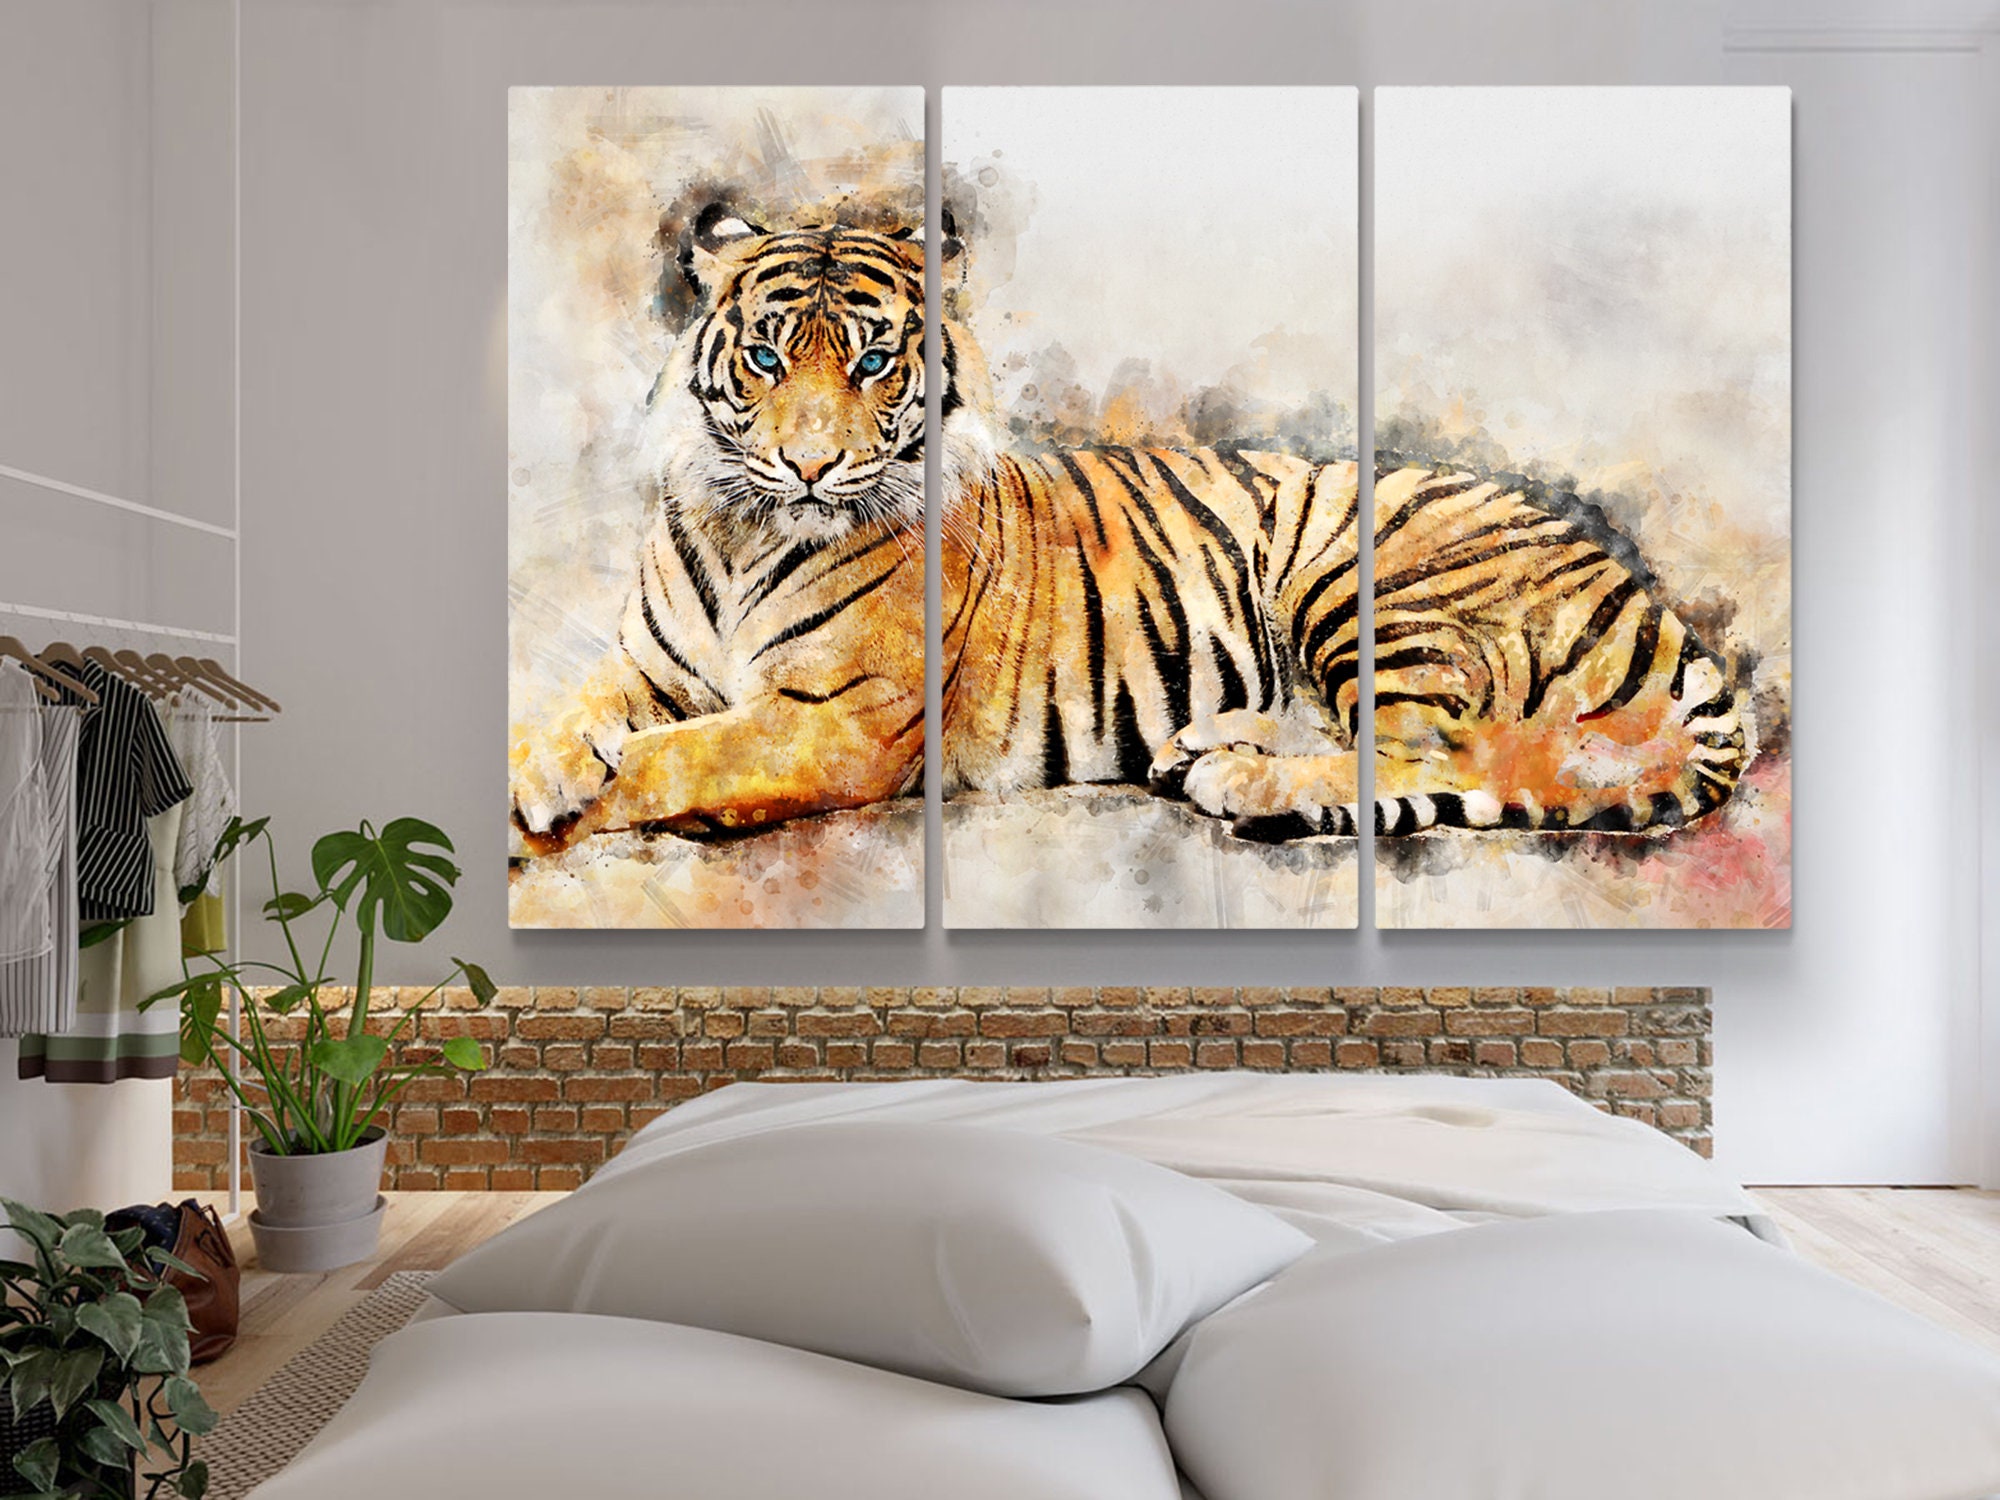 Tiger watercolor painting wall print animal wall art | Etsy